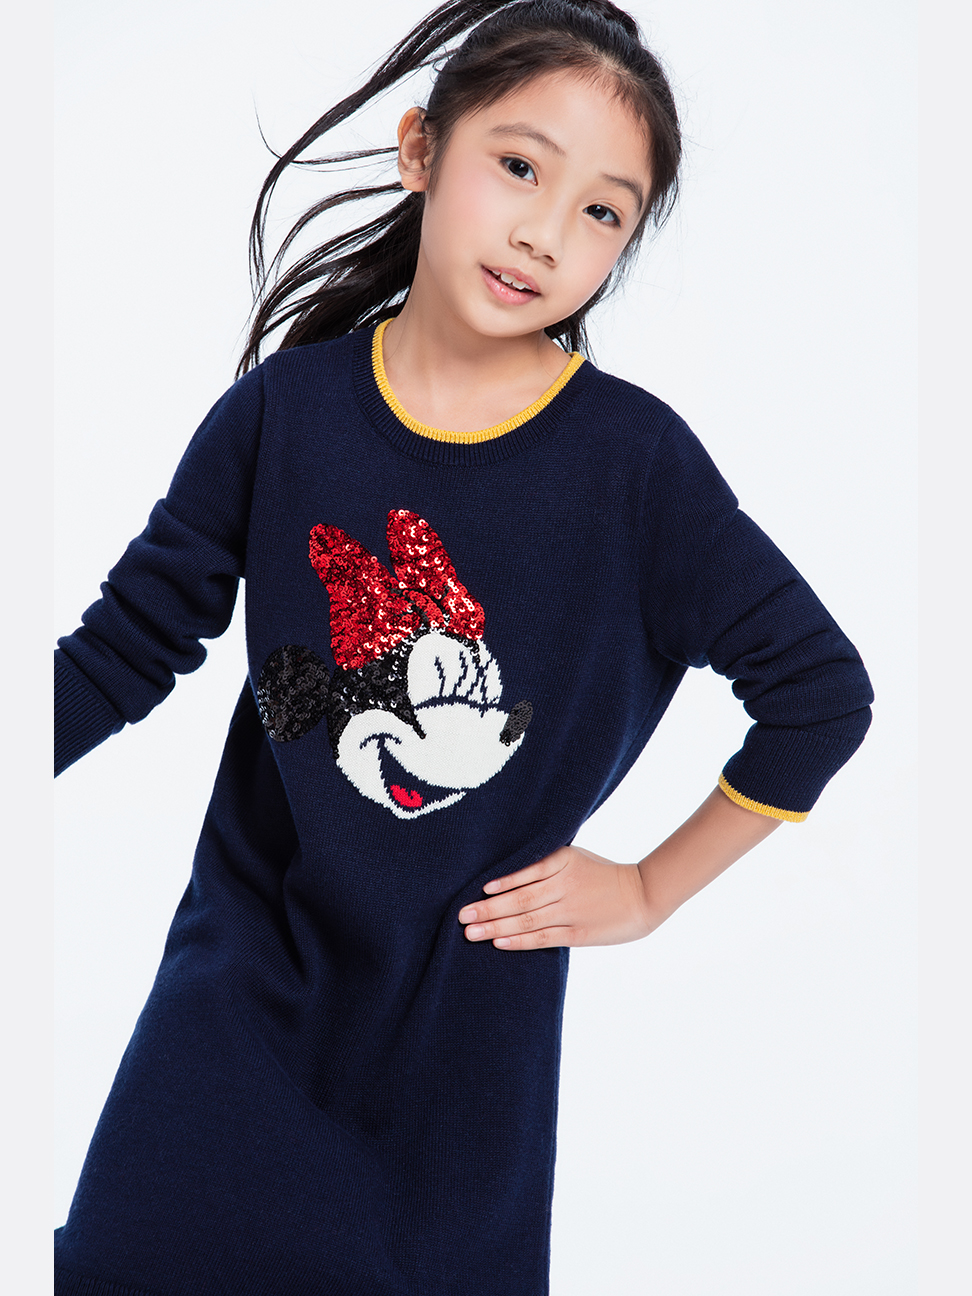 女童裝|Gap x Disney迪士尼聯名 米妮亮片針織洋裝-海軍藍色